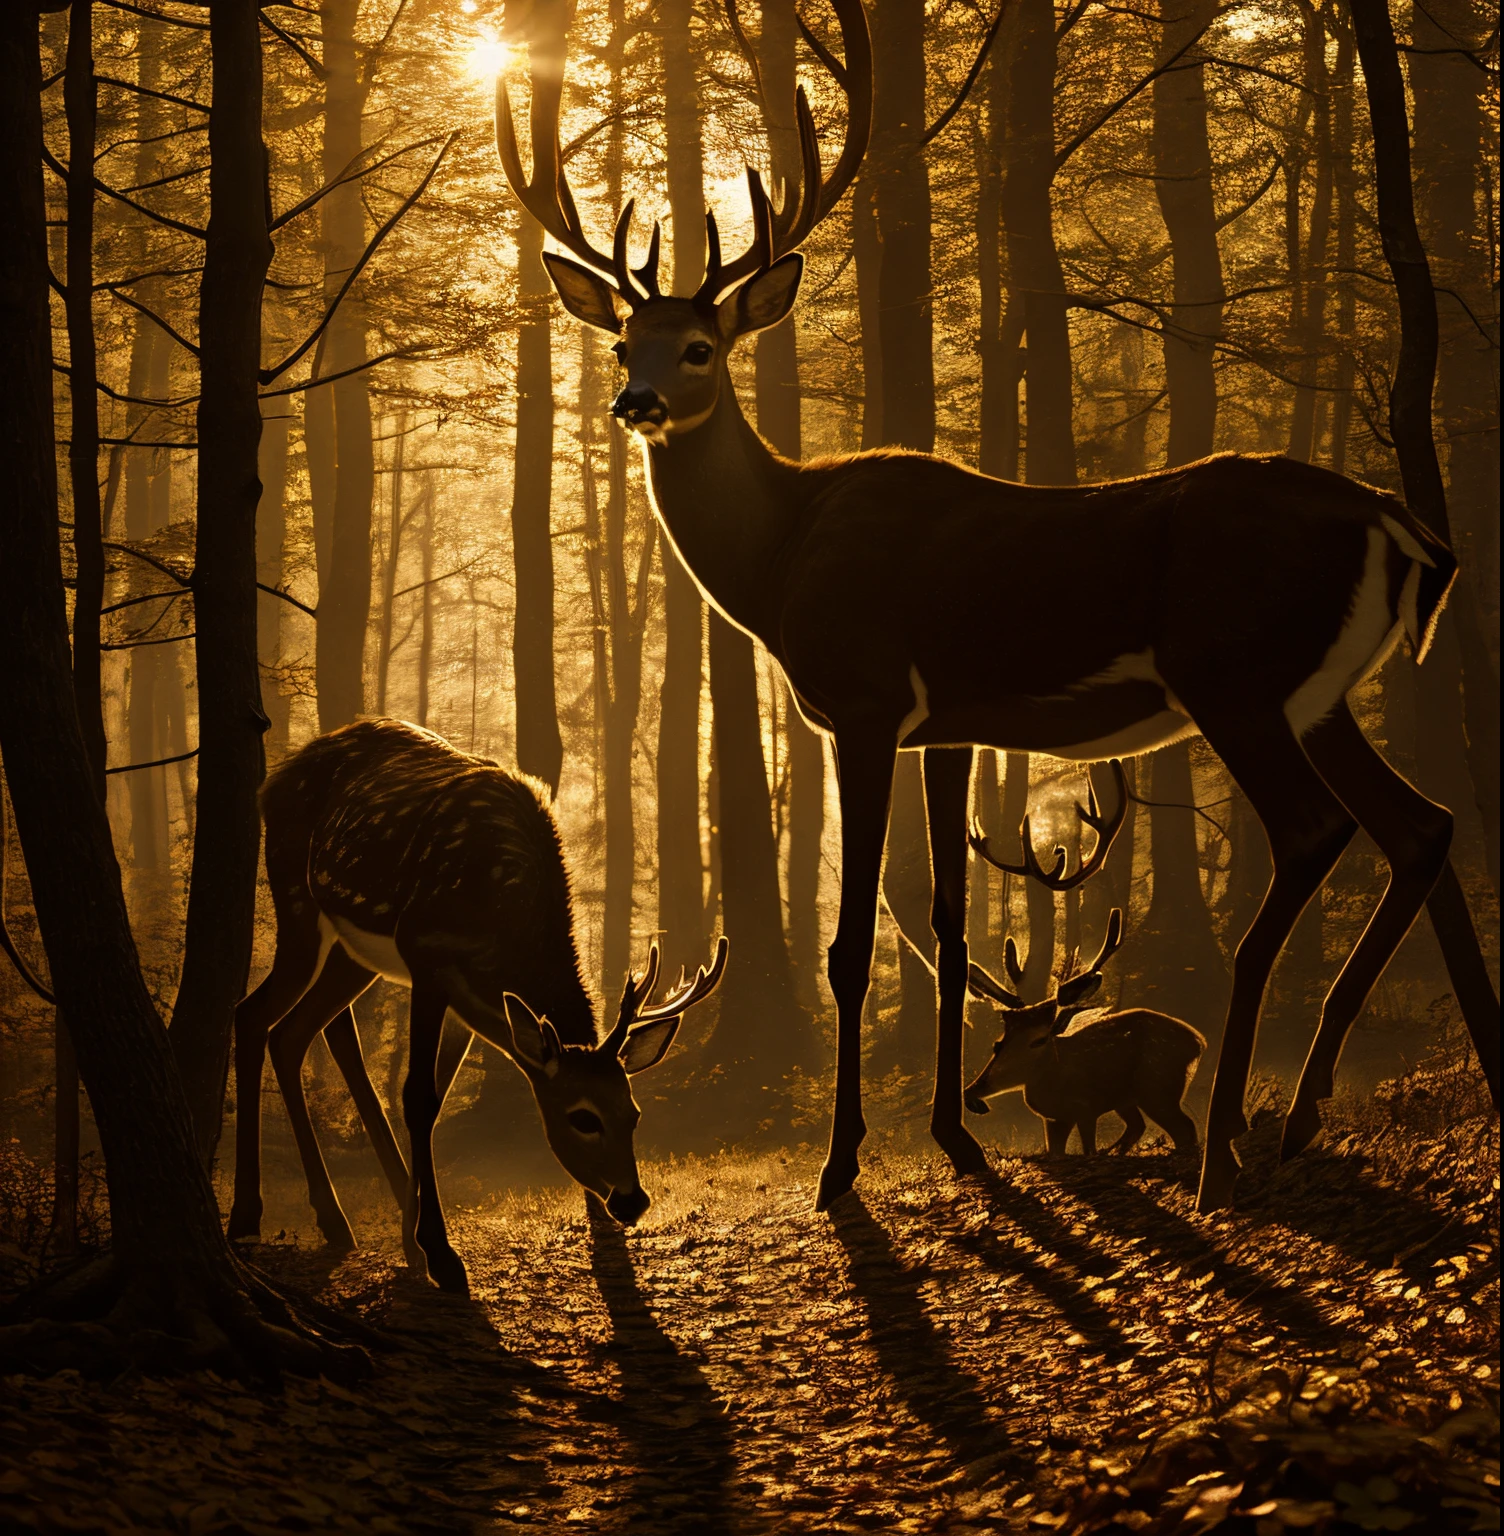 Dos ciervos en hojas, uno olfateando el suelo, el otro mirando a su alrededor Un bosque de fantasía，Perspectiva borrosa，luz de sol, que penetra entre los árboles